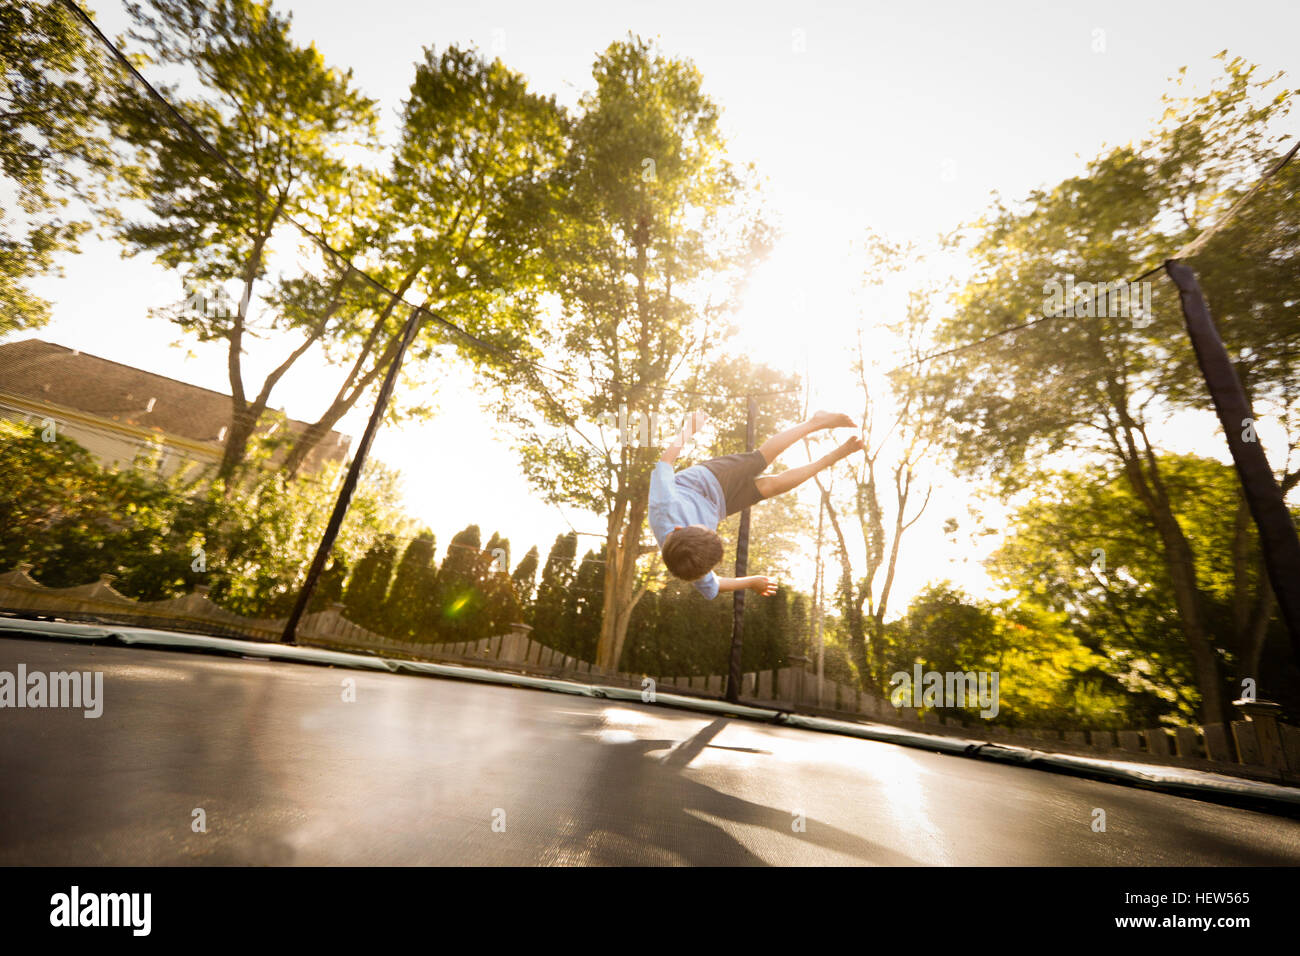 Jeune garçon faisant somersault sur grand trampoline, low angle view Banque D'Images